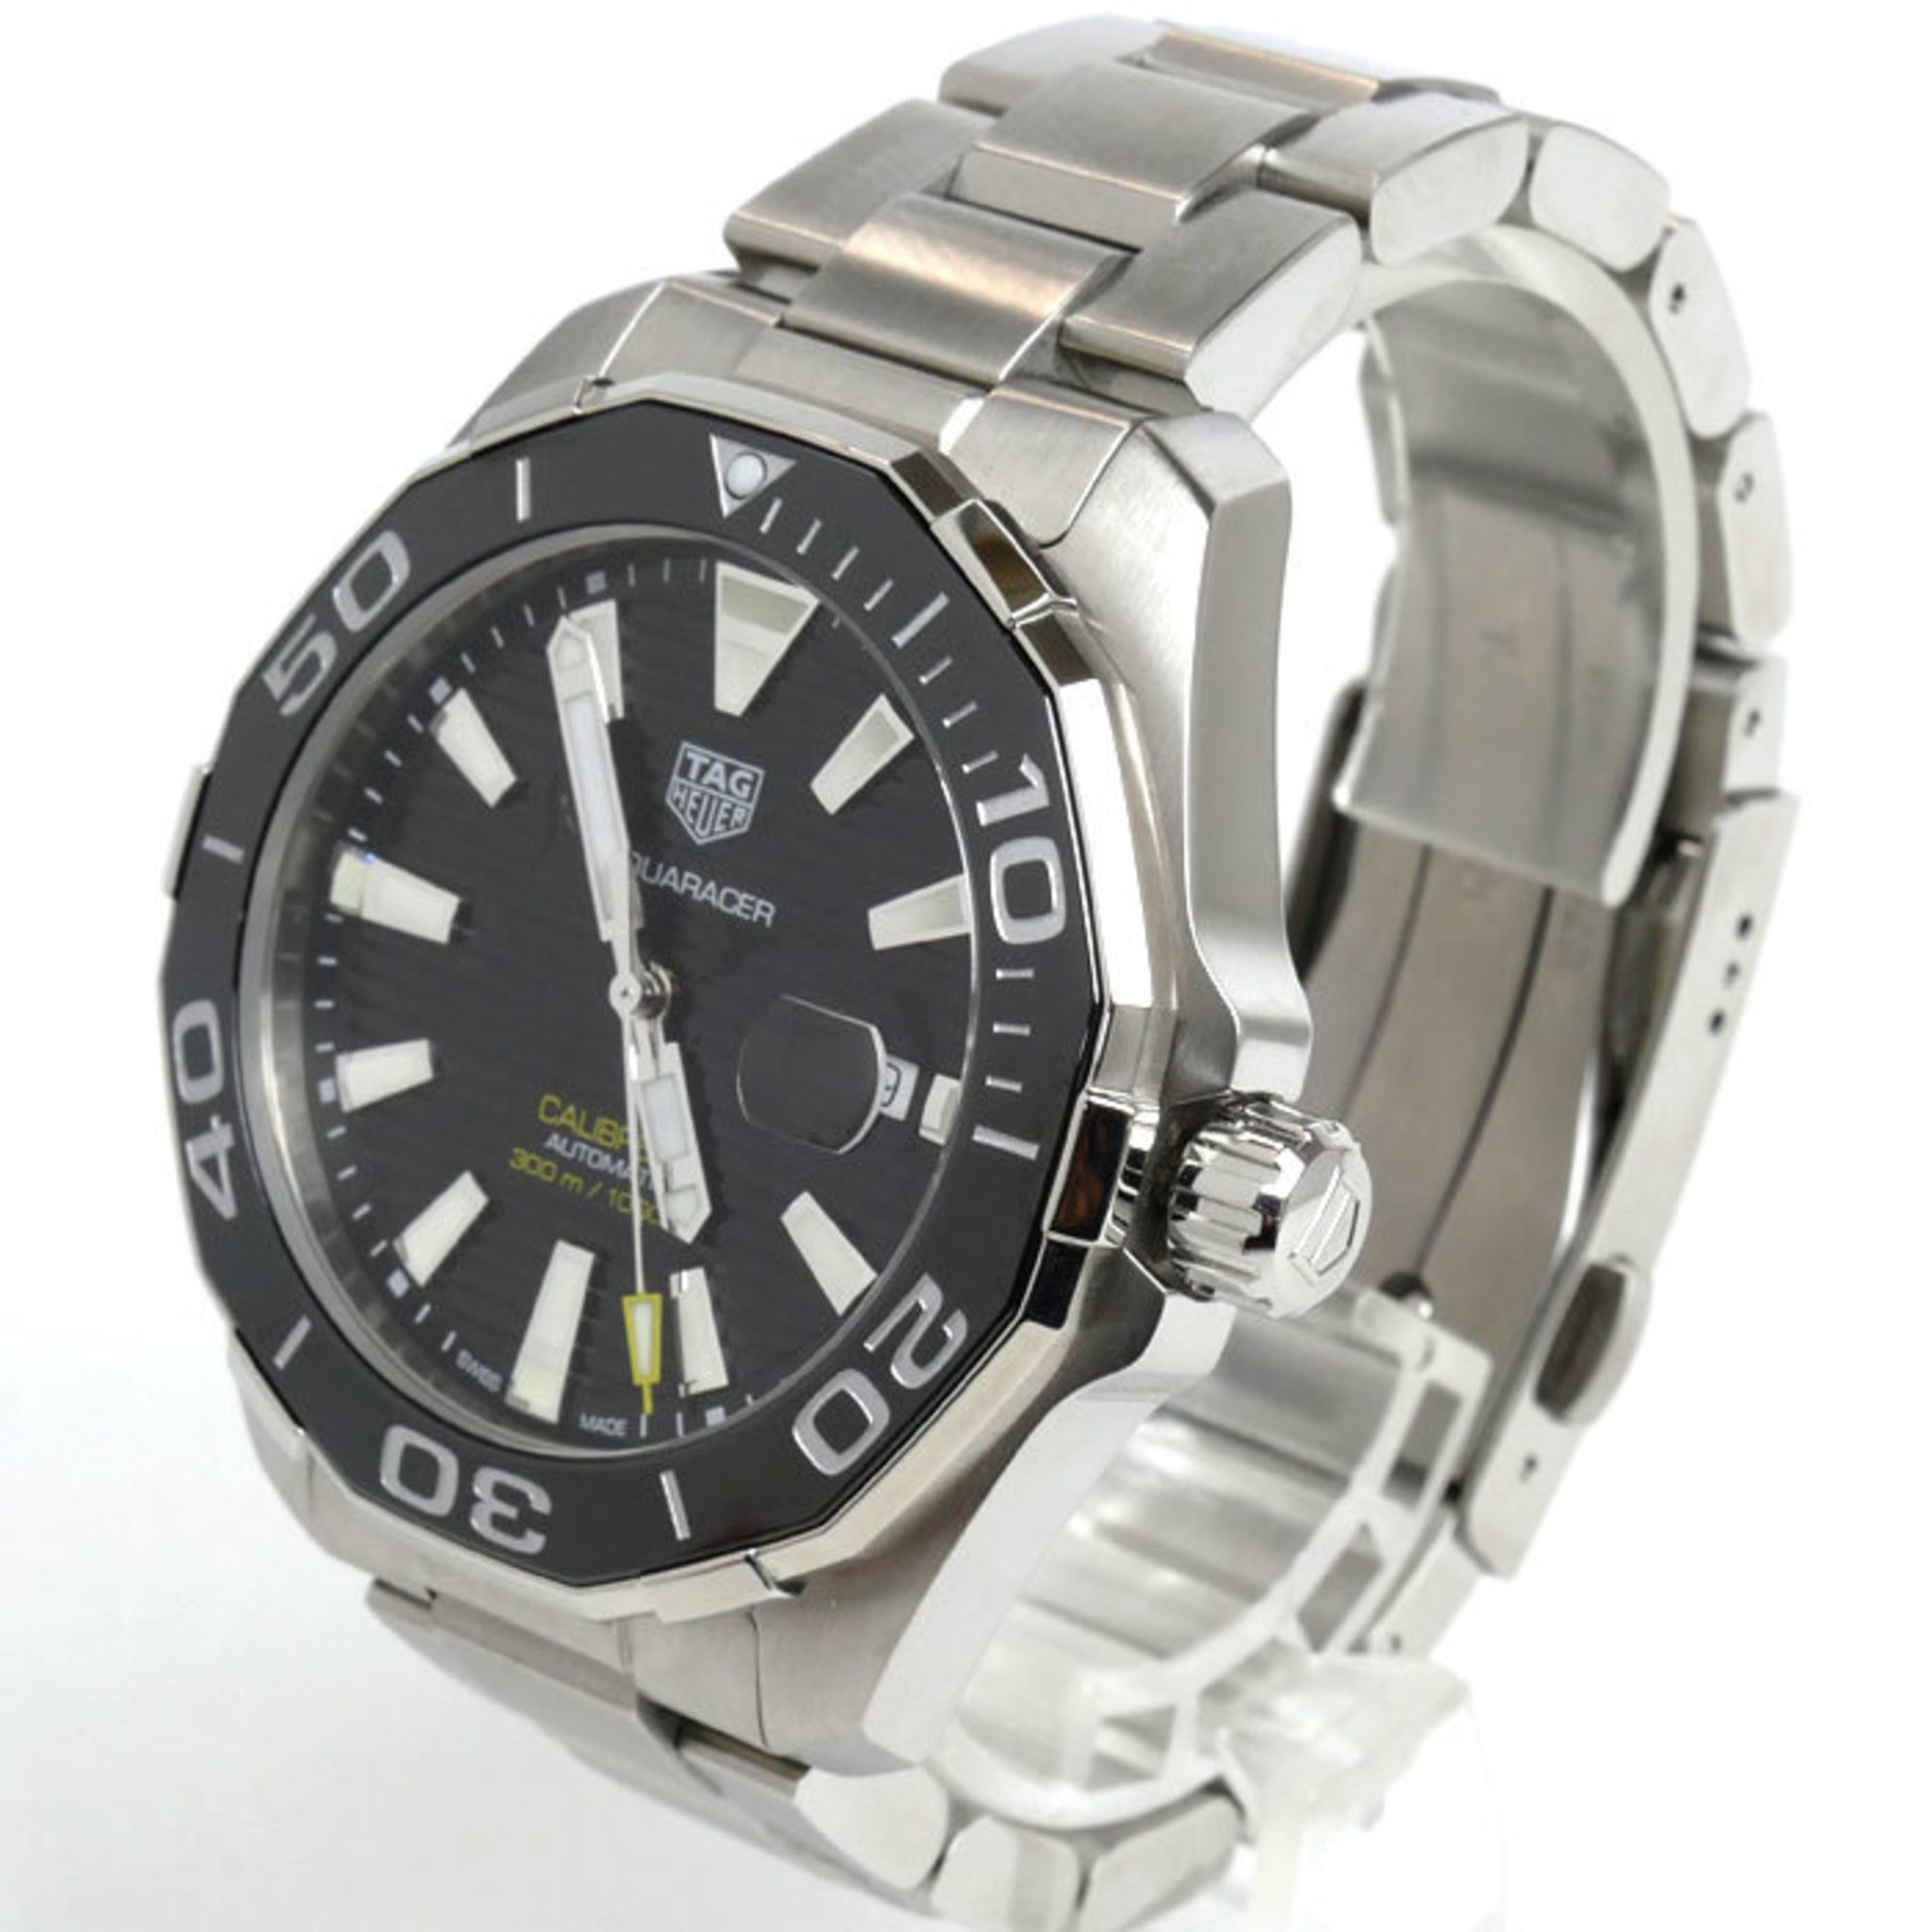 TAG HEUER Aquaracer Calibre 5 Automatic Wristwatch WAY201A.BA0927 Men's